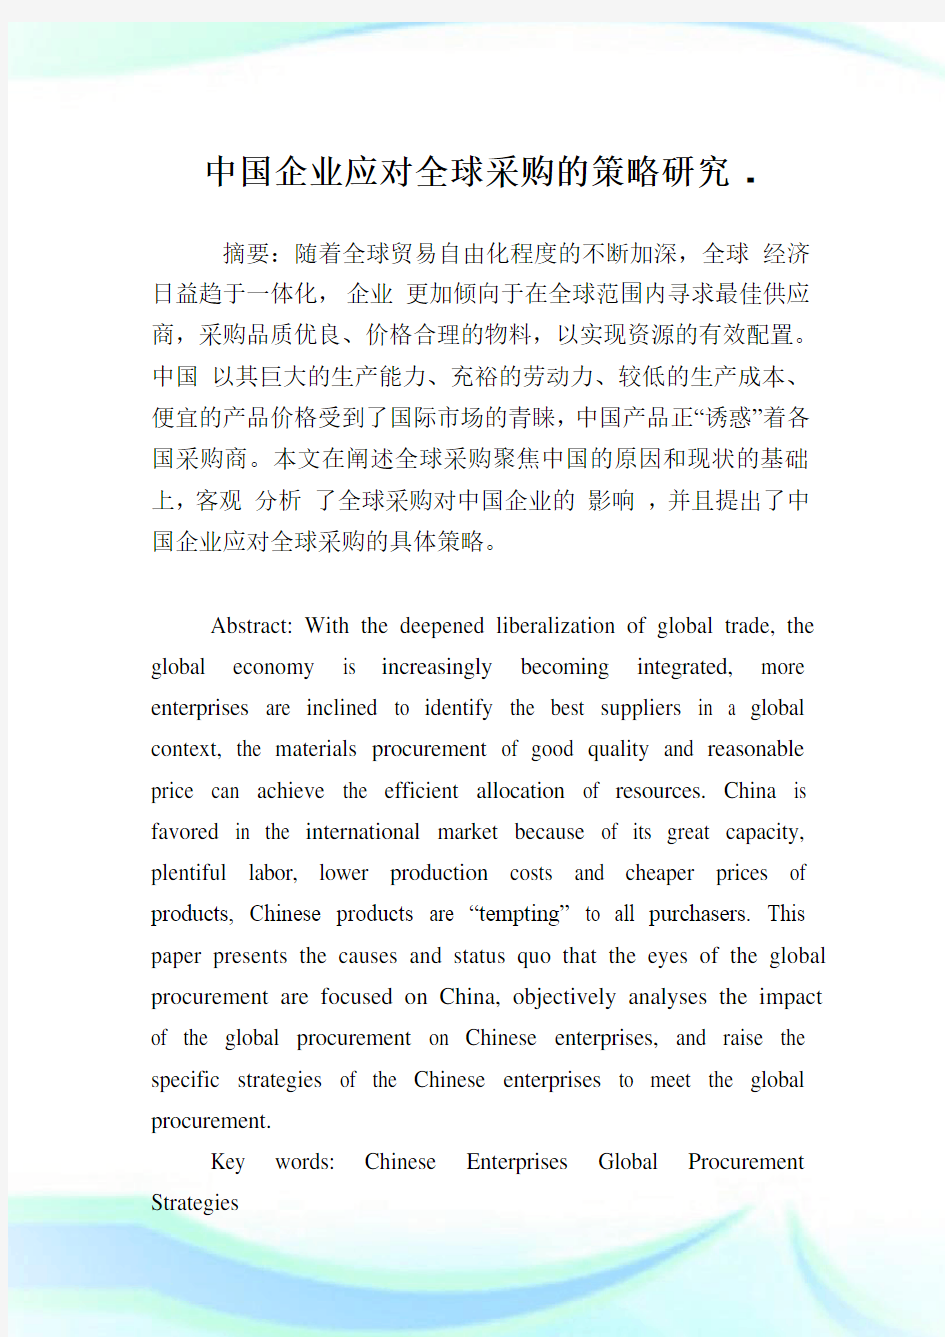 中国企业应对全球采购的策略研究.doc